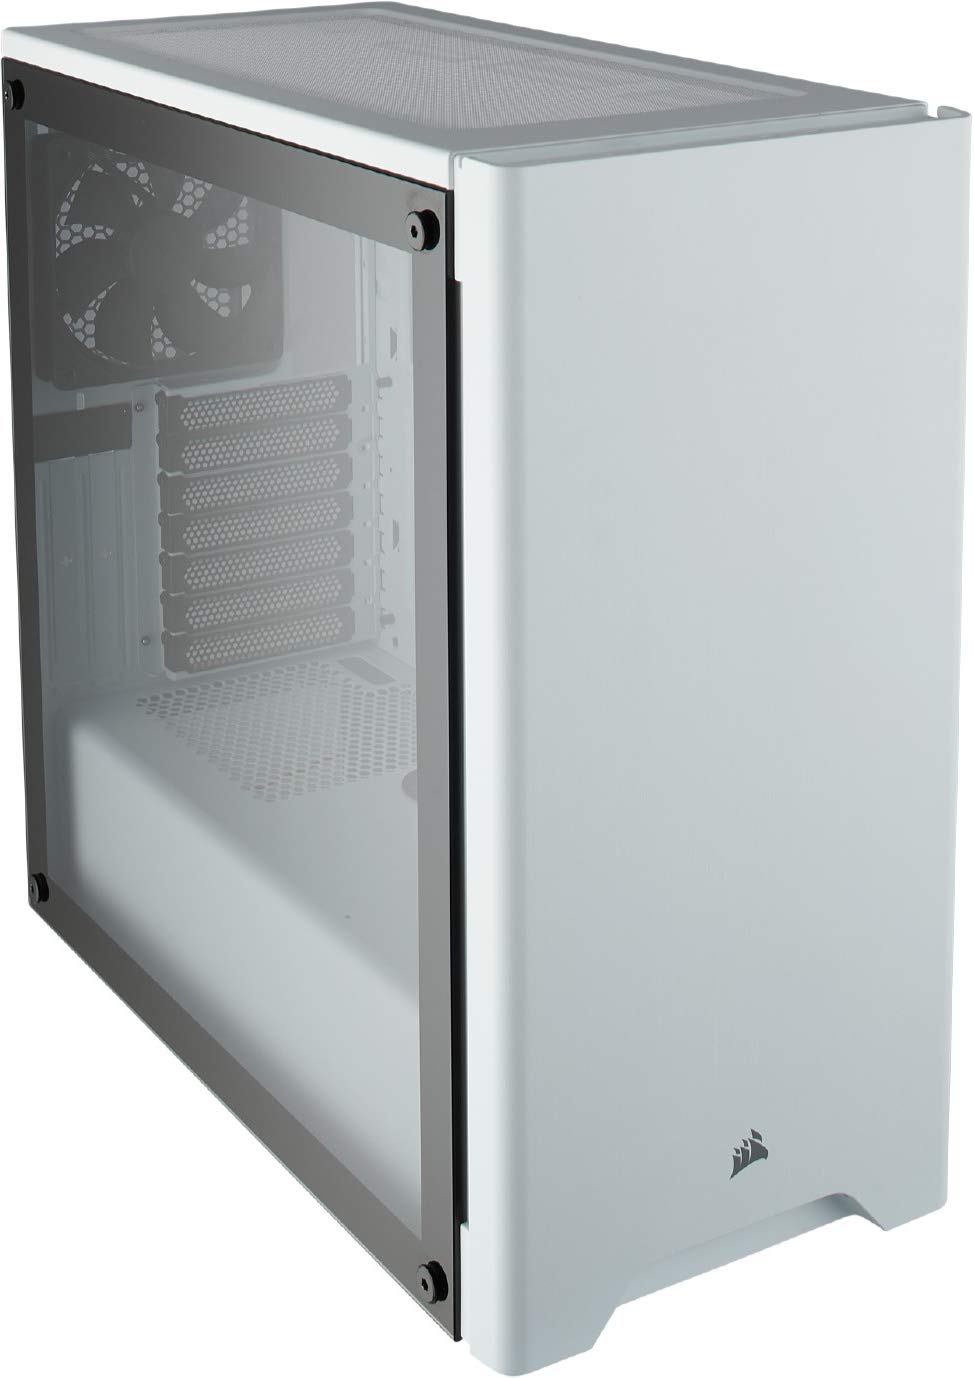 Corsair Carbide Series 275R Gaming-PC-Gehäuse (ATX Mid-Tower mit gehärtetem Glas window, Seitliches Sichtfenster, klaren Innenlayout und vielseitigen kühloptionen) weiß